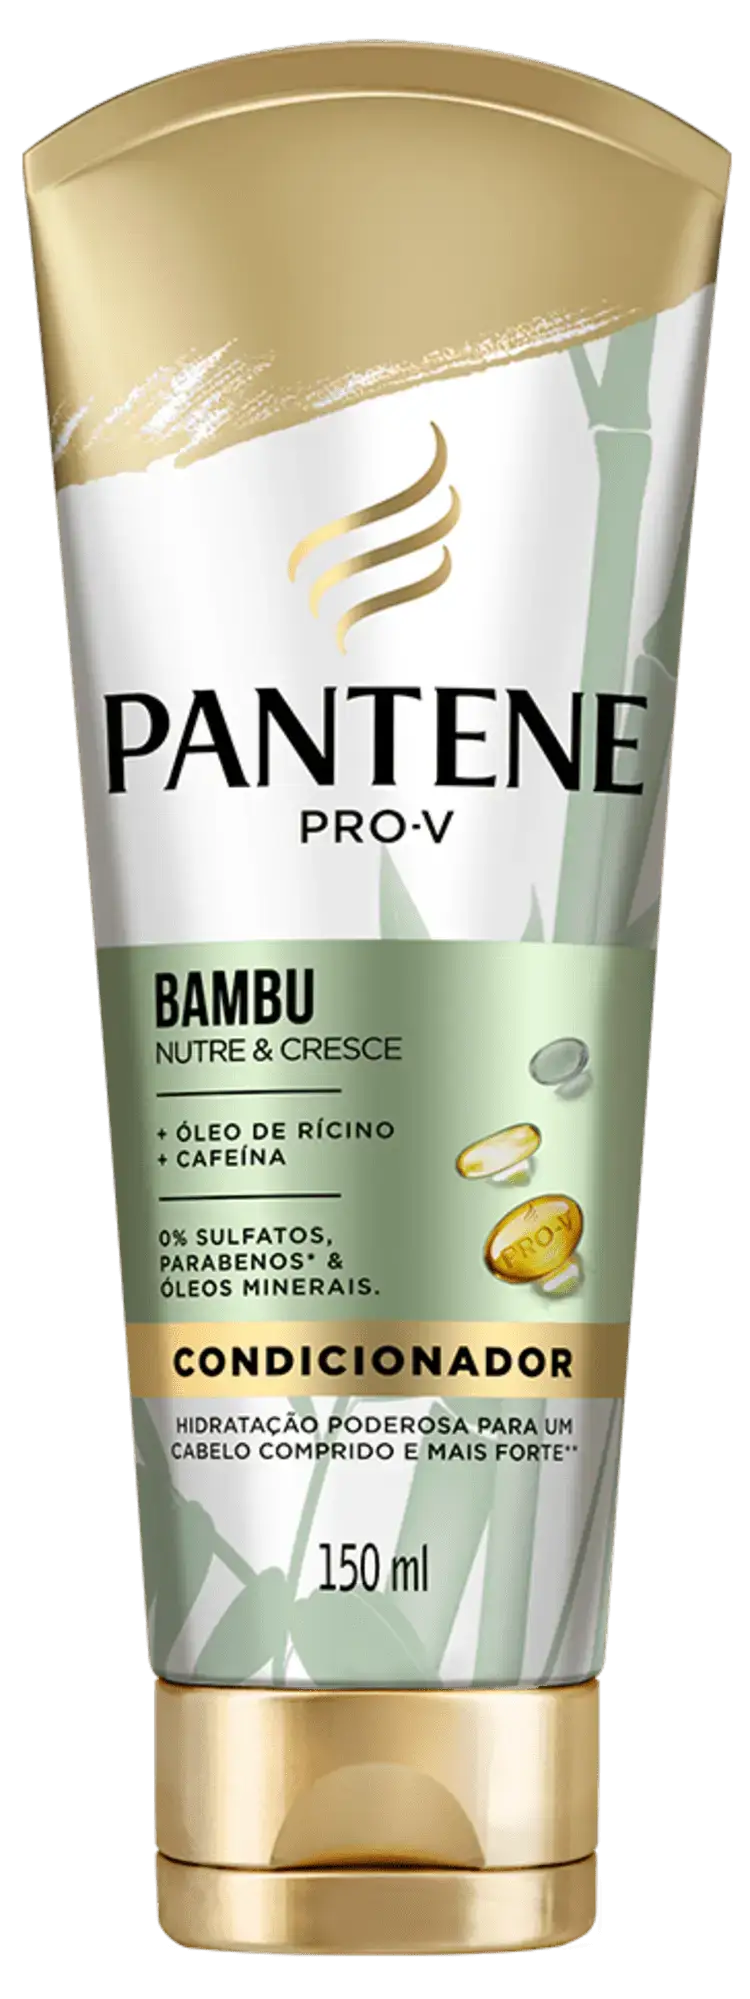 Condicionador Pantene Bambu Nutre e Cresce, hidratação capilar com óleo de rícino e cafeína